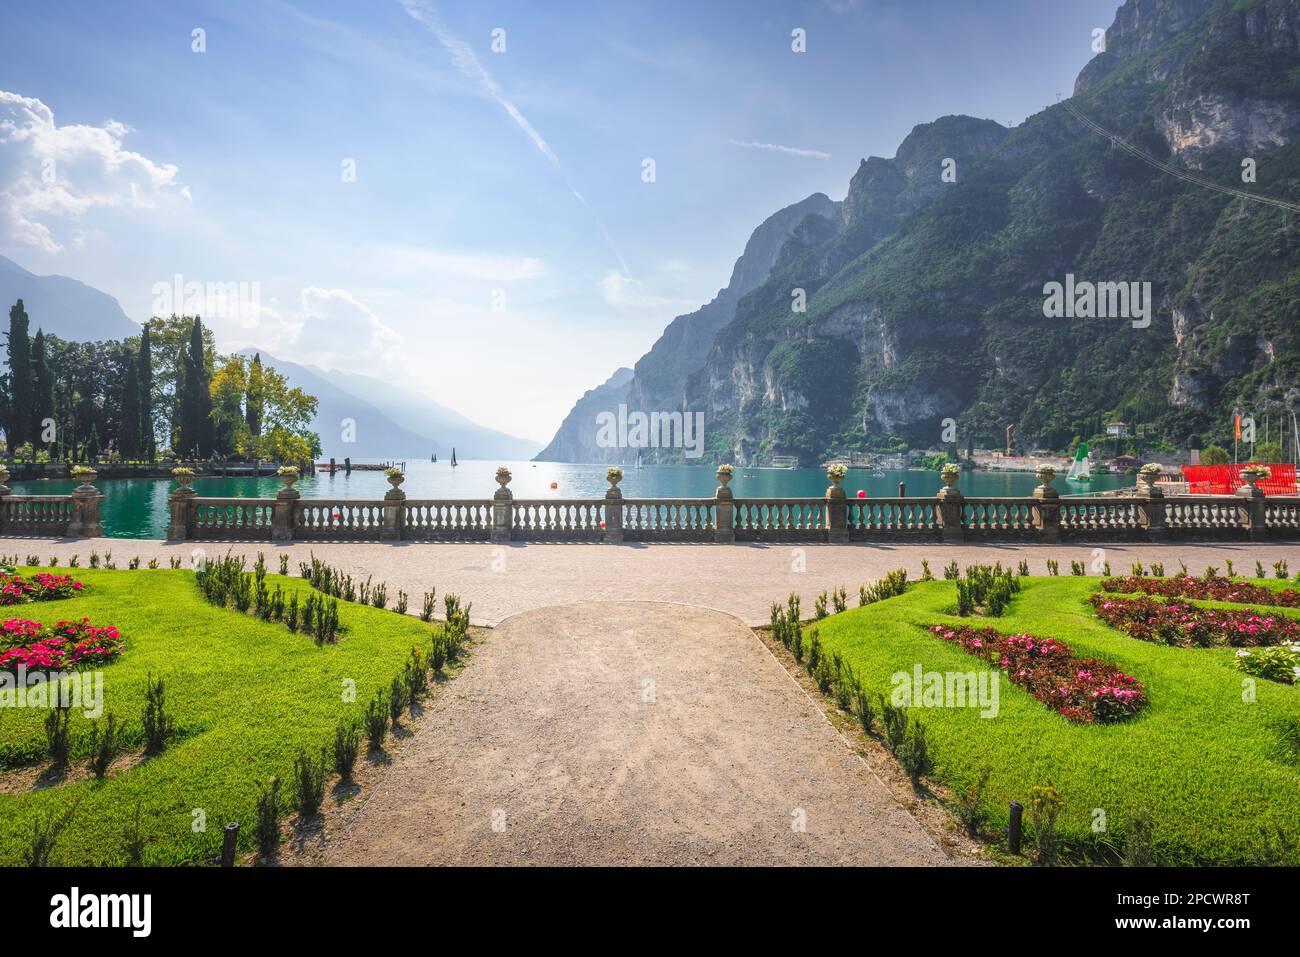 Gärten eines öffentlichen Parks und Terrasse am Gardasee. Riva del Garda, Trentino, Italien, Europa. Stockfoto